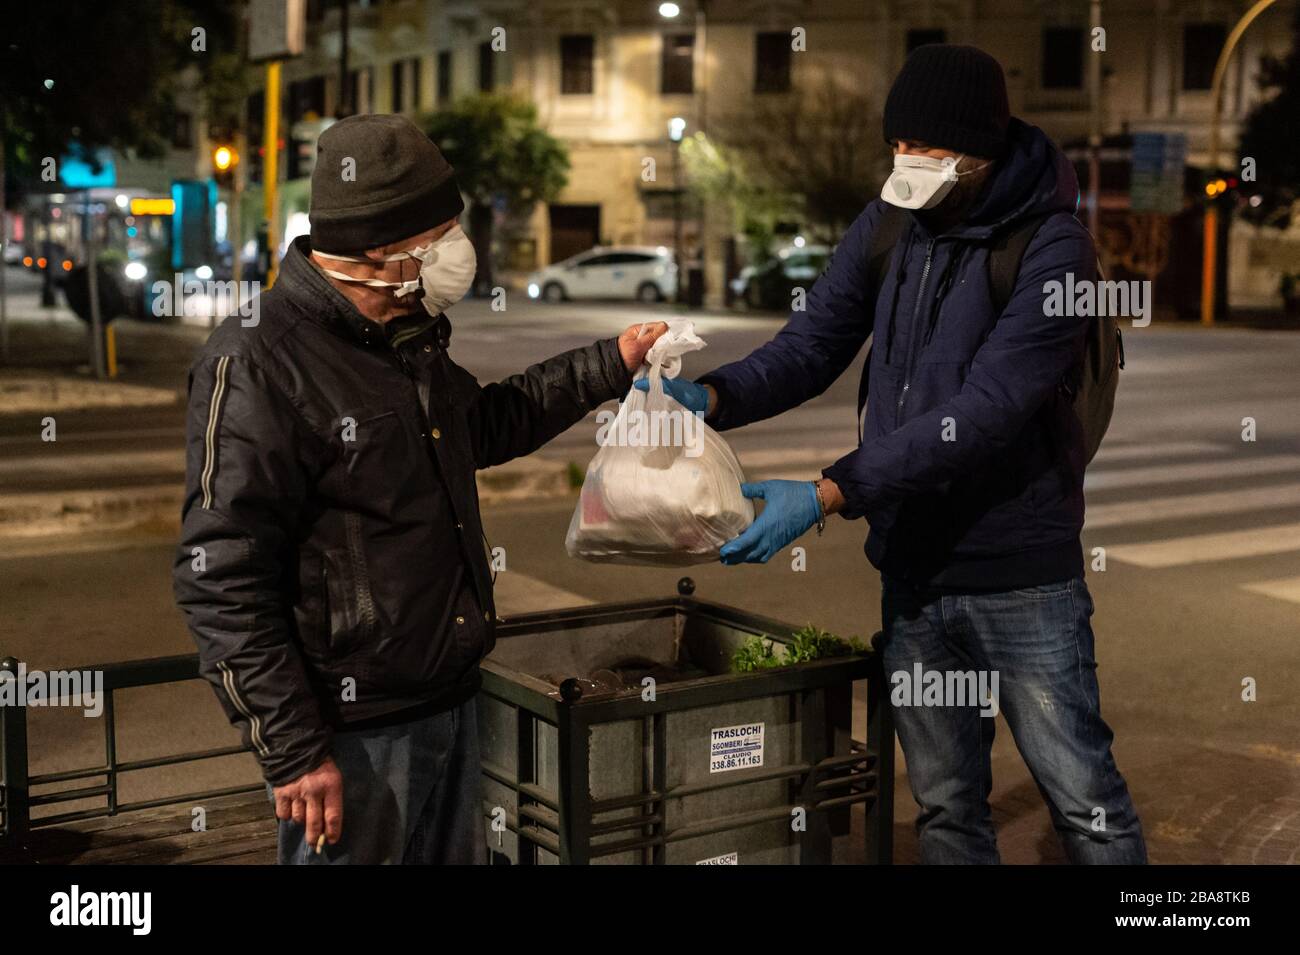 A Rome, lors de la terrible épidémie de Coronavirus qui a frappé l'Italie, les volontaires de la Communauté de Sant'Egidio distribuent des repas et des services de santé aux sans-abri et aux autres personnes défavorisées qui vivent dans les rues. Banque D'Images